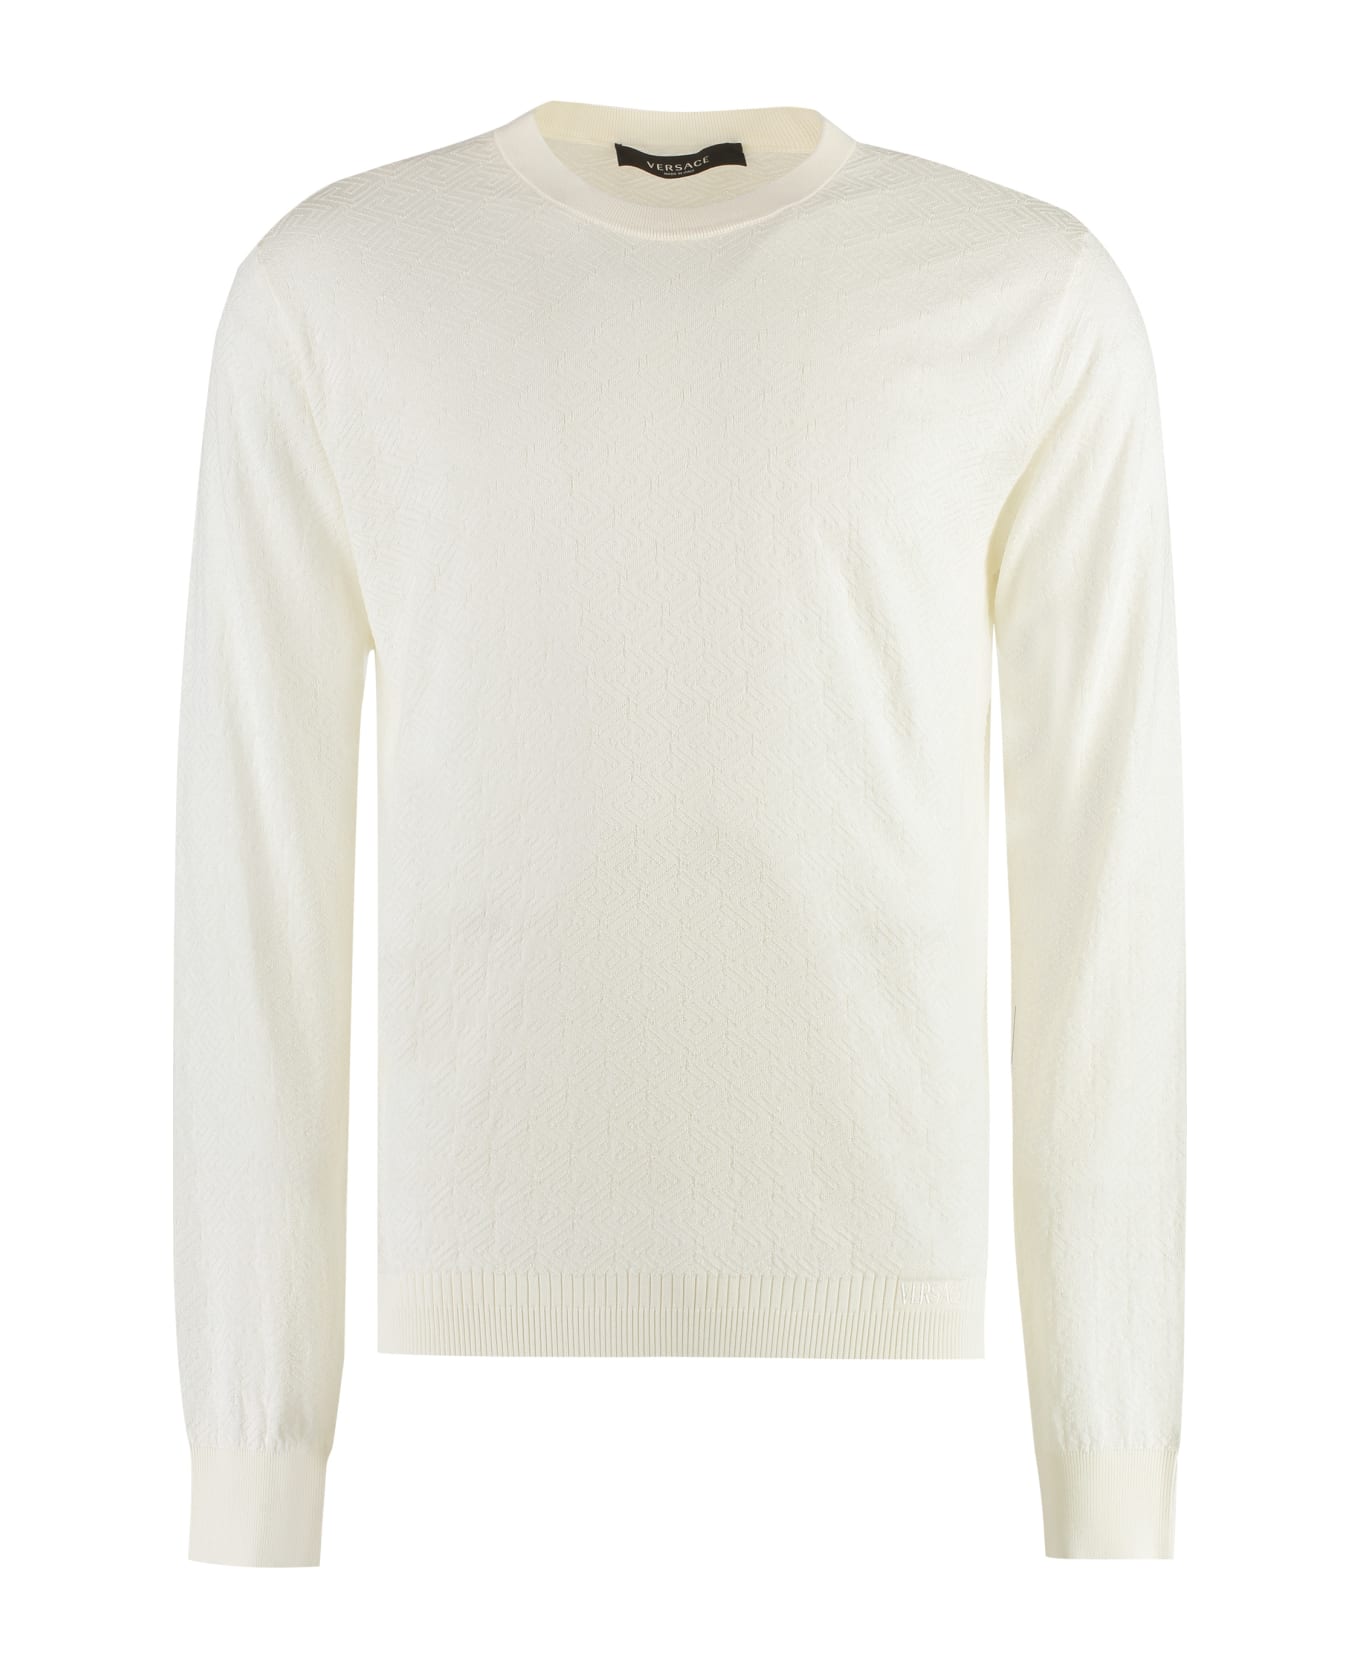 Versace Long Sleeve Cotton Blend T-shirt - Ivory